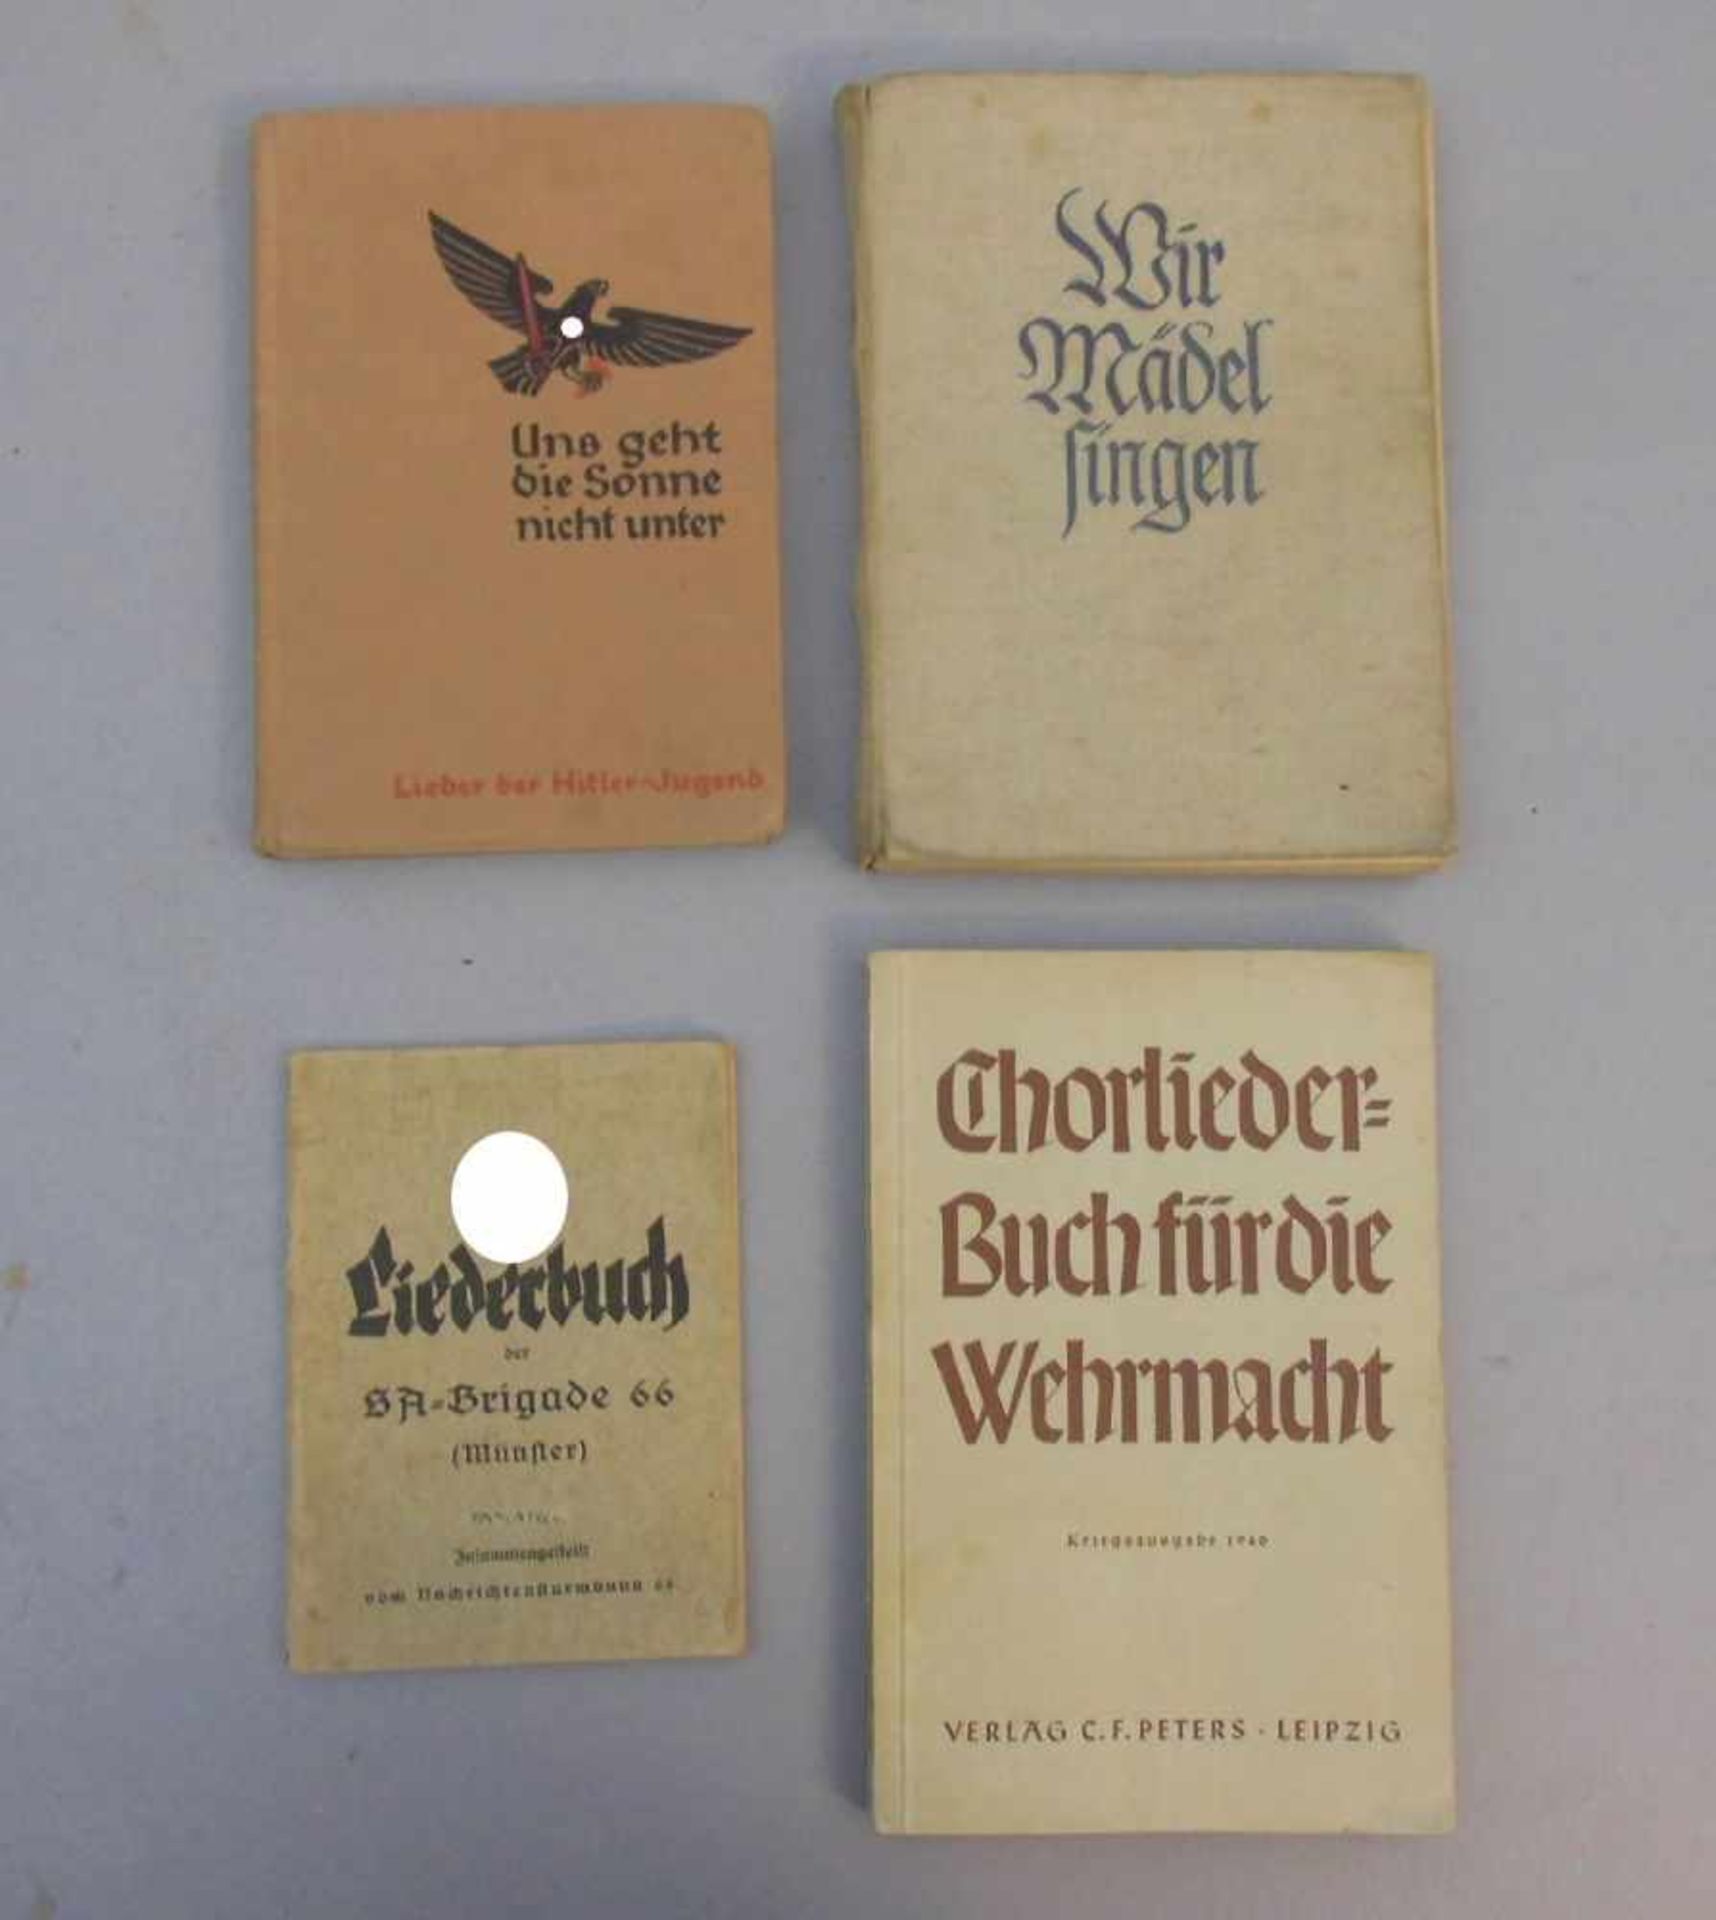 4 LIEDERBÜCHER "DRITTES REICH" / NS-ZEIT. 1) "Liederbuch der SA-Brigade 66 (Münster),